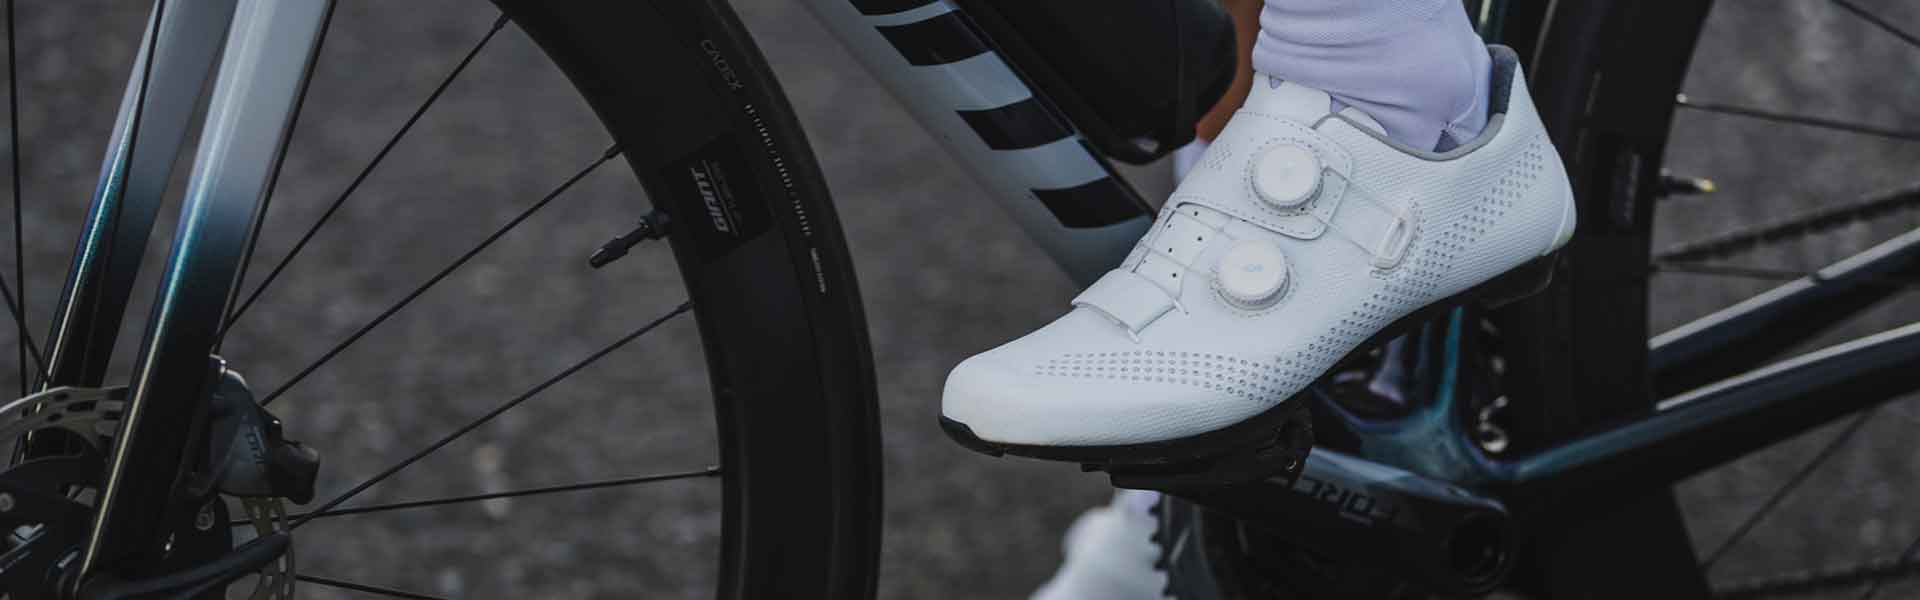 Zapatillas MTB Elite Grey, Ciclismo